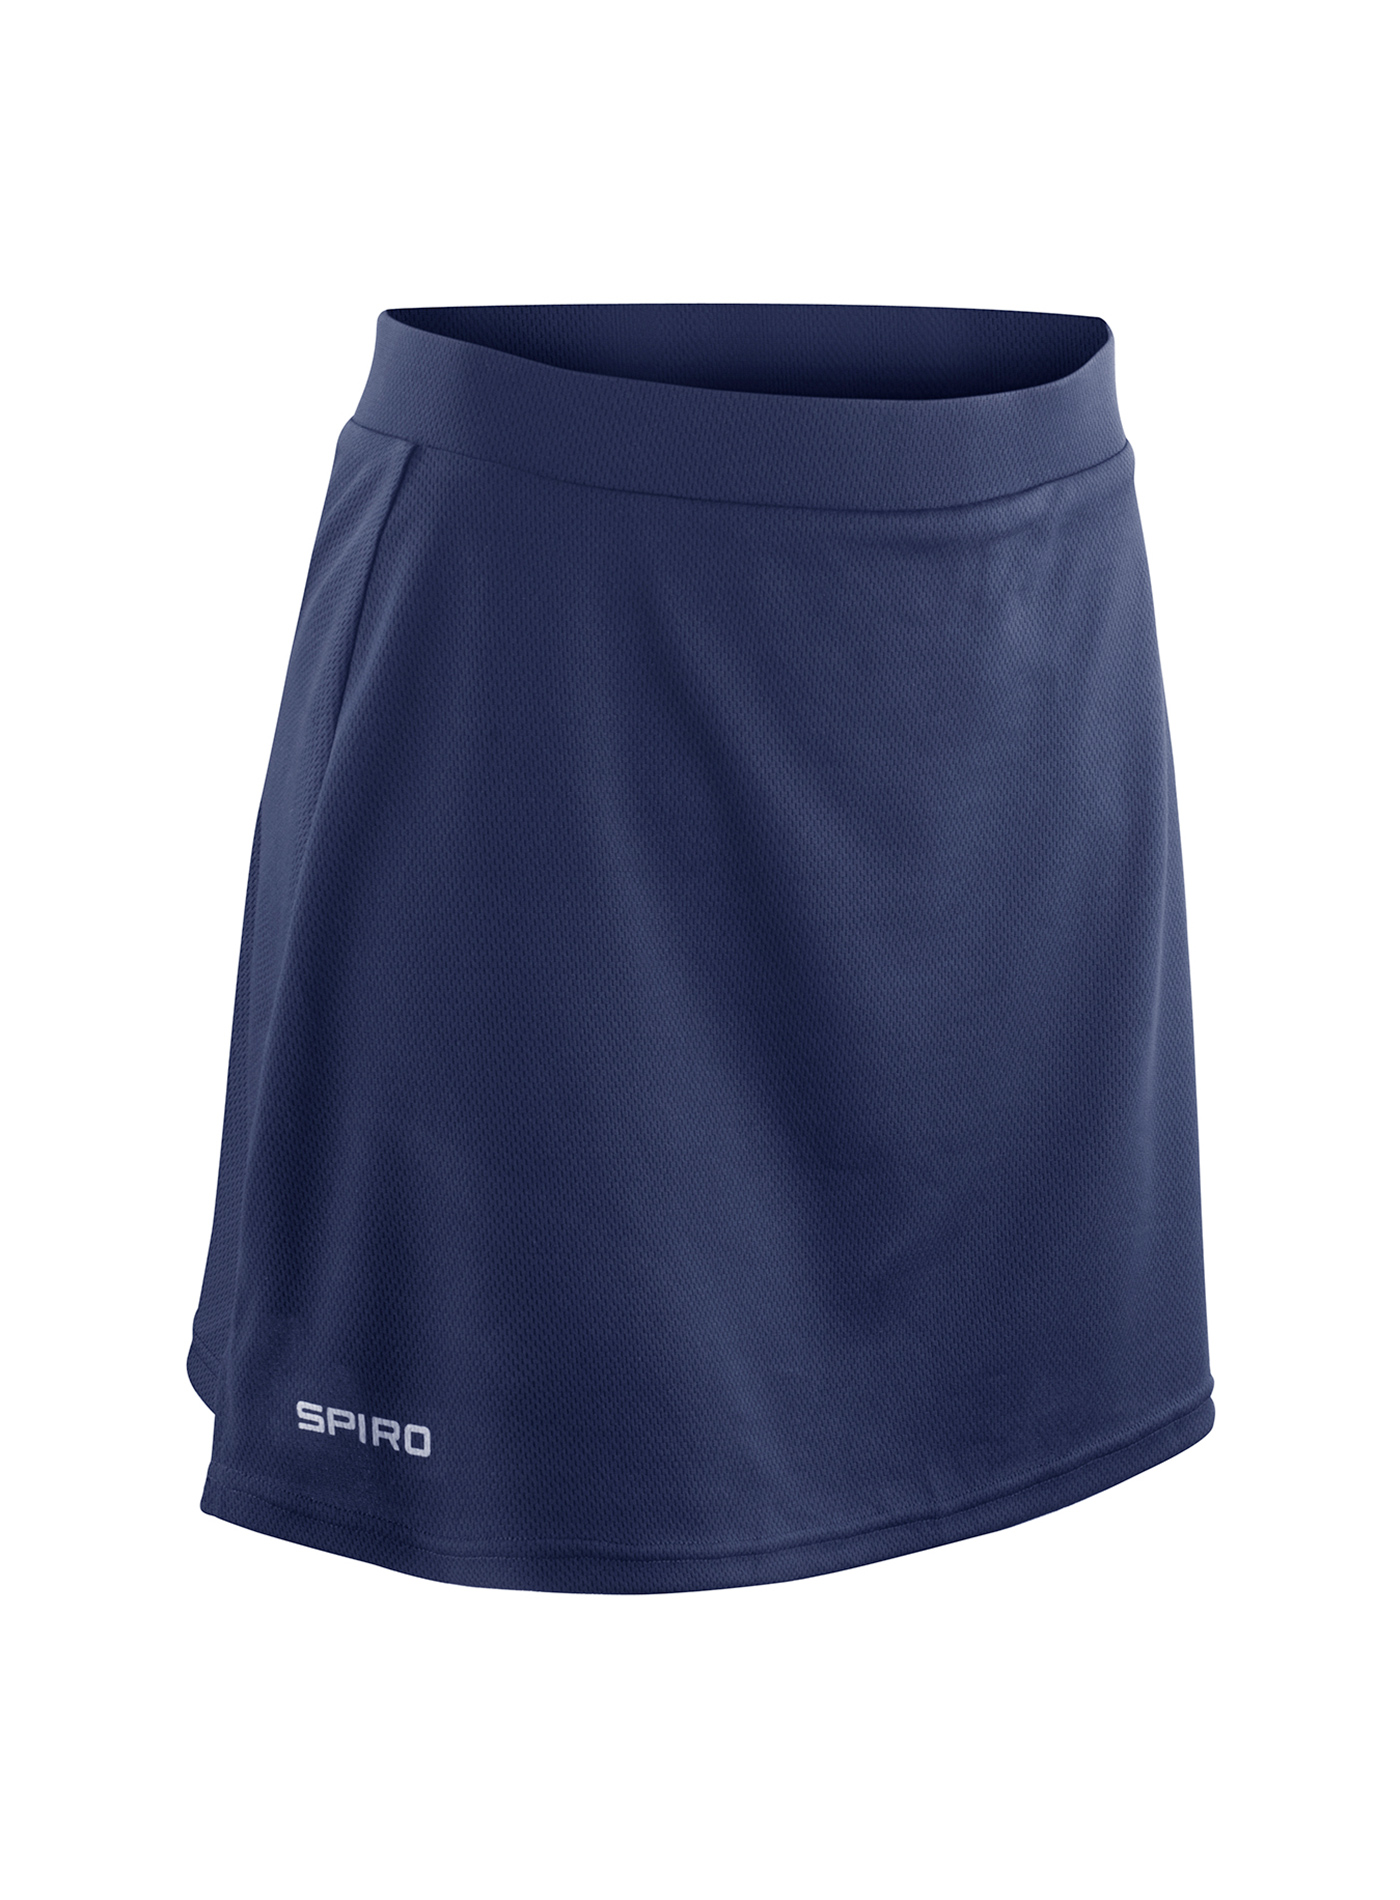 Dámská sportovní sukně s integrovanými šortkami Spiro - Cobalt blue/Navy XL